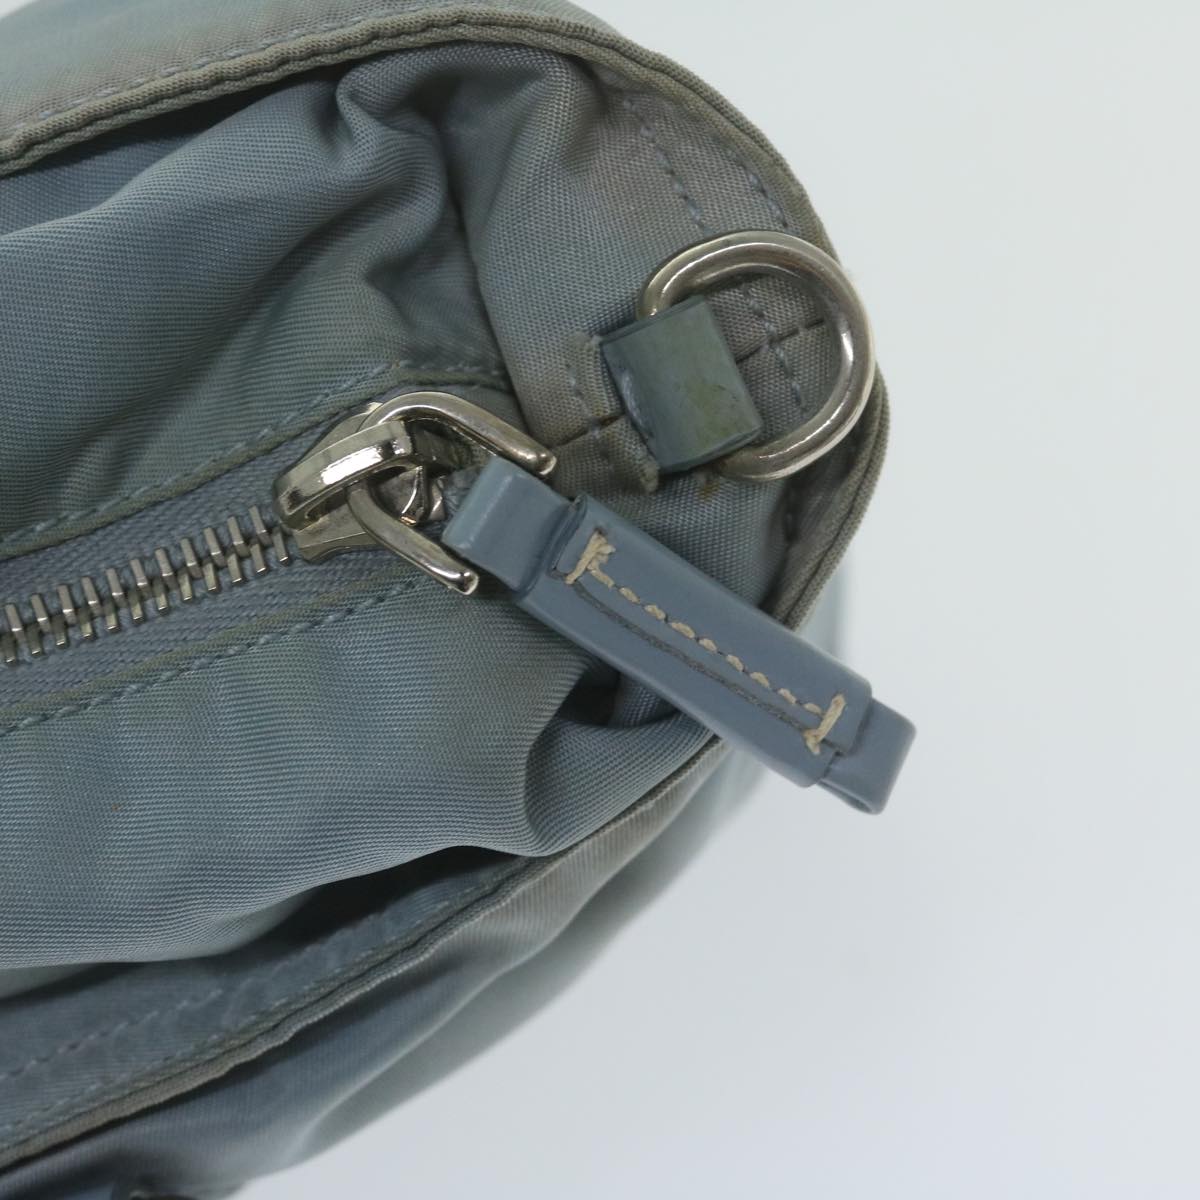 PRADA Hand Bag Nylon 2way Light Blue Auth 63525